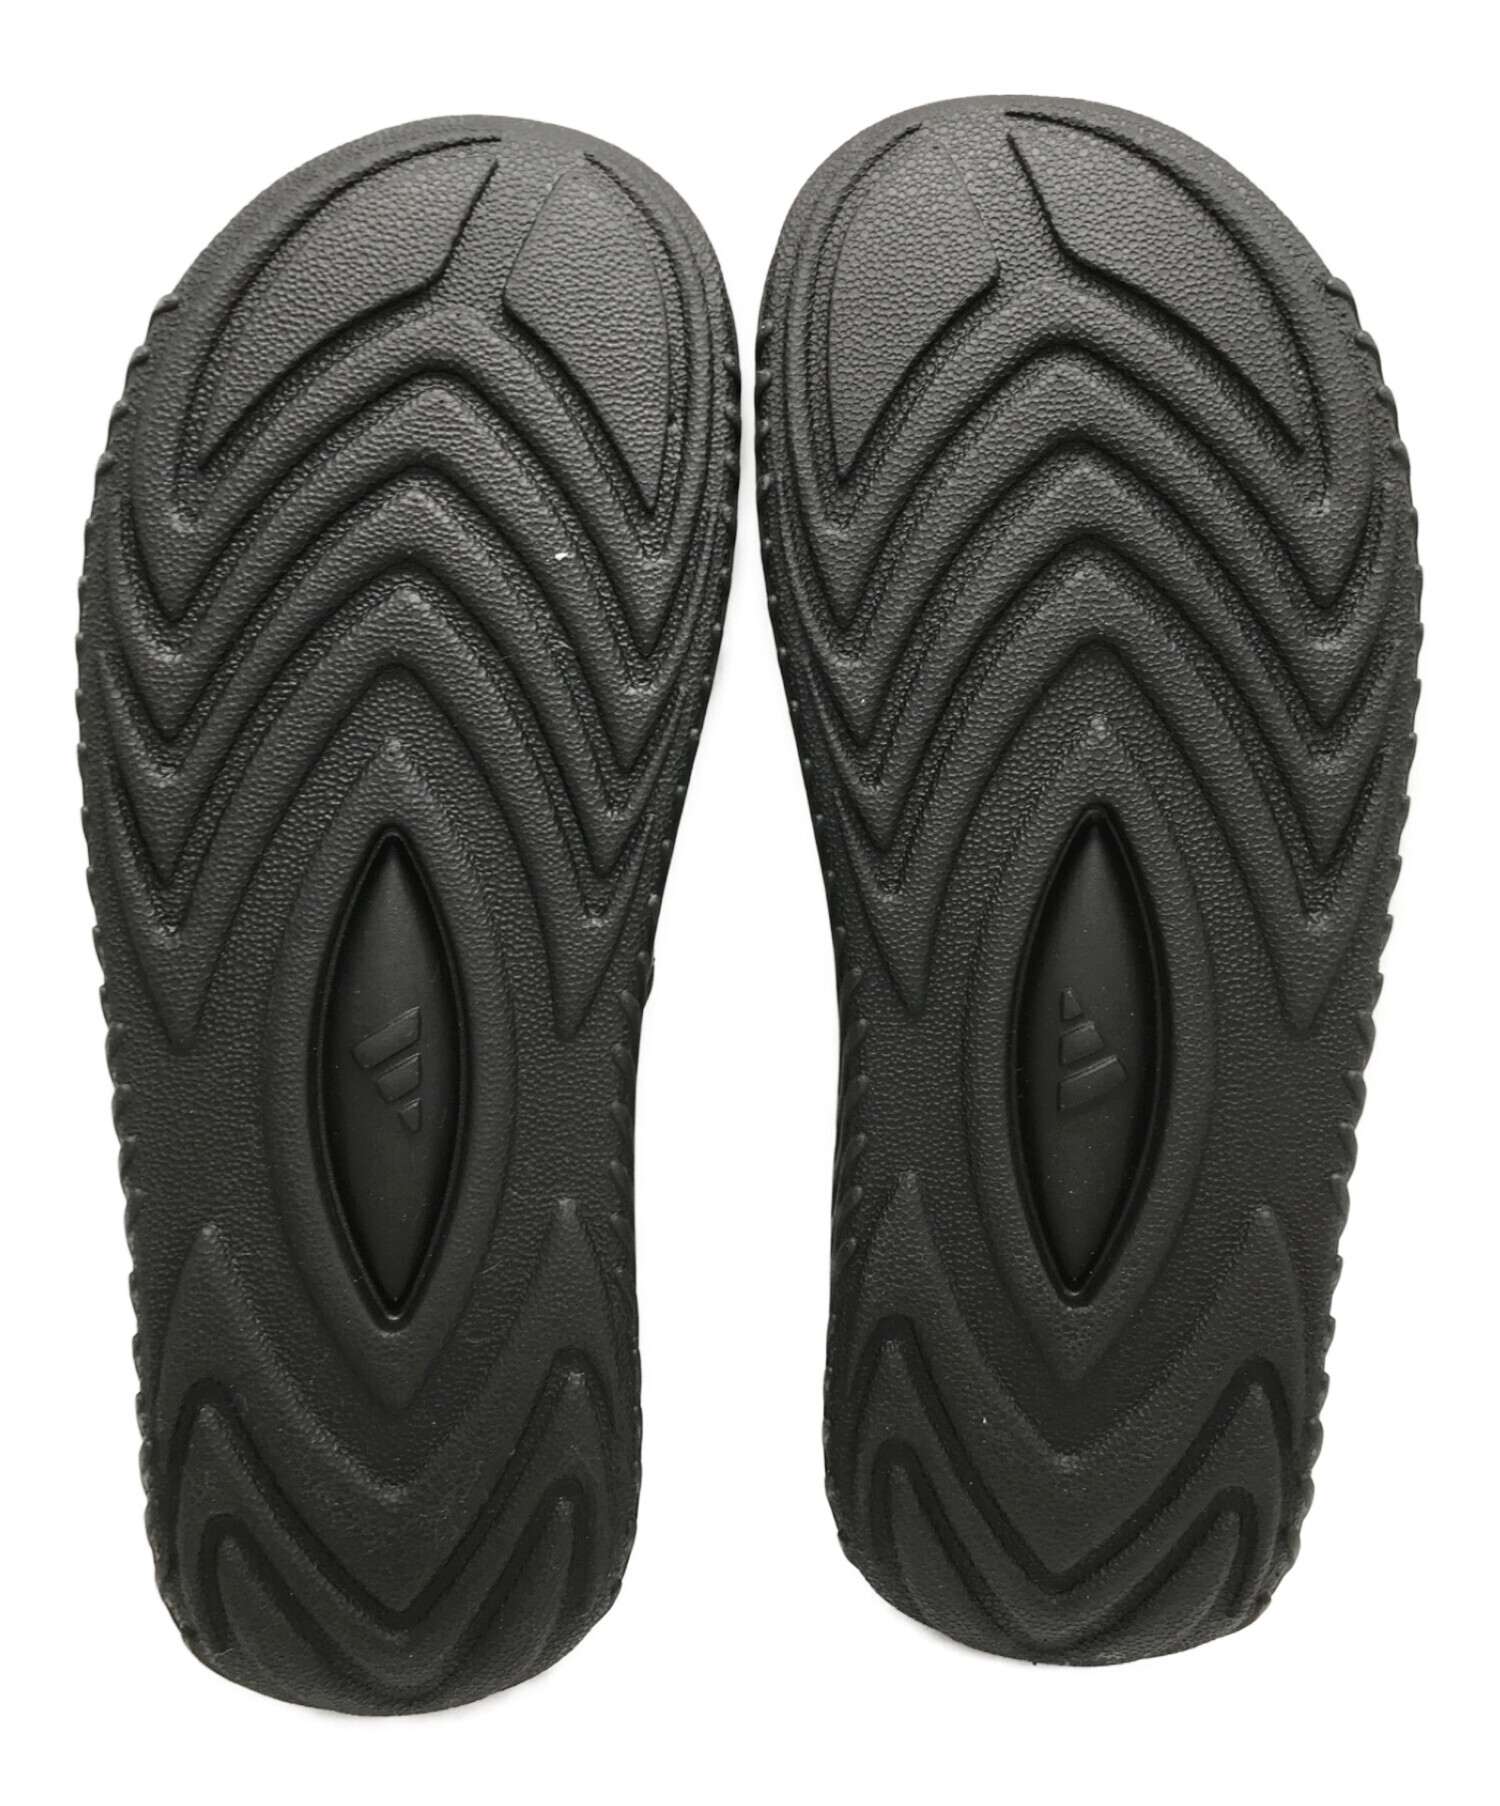 adidas (アディダス) 遊戯王 (ユウギオウ) コラボサンダル ブラック サイズ:26.5cm 未使用品